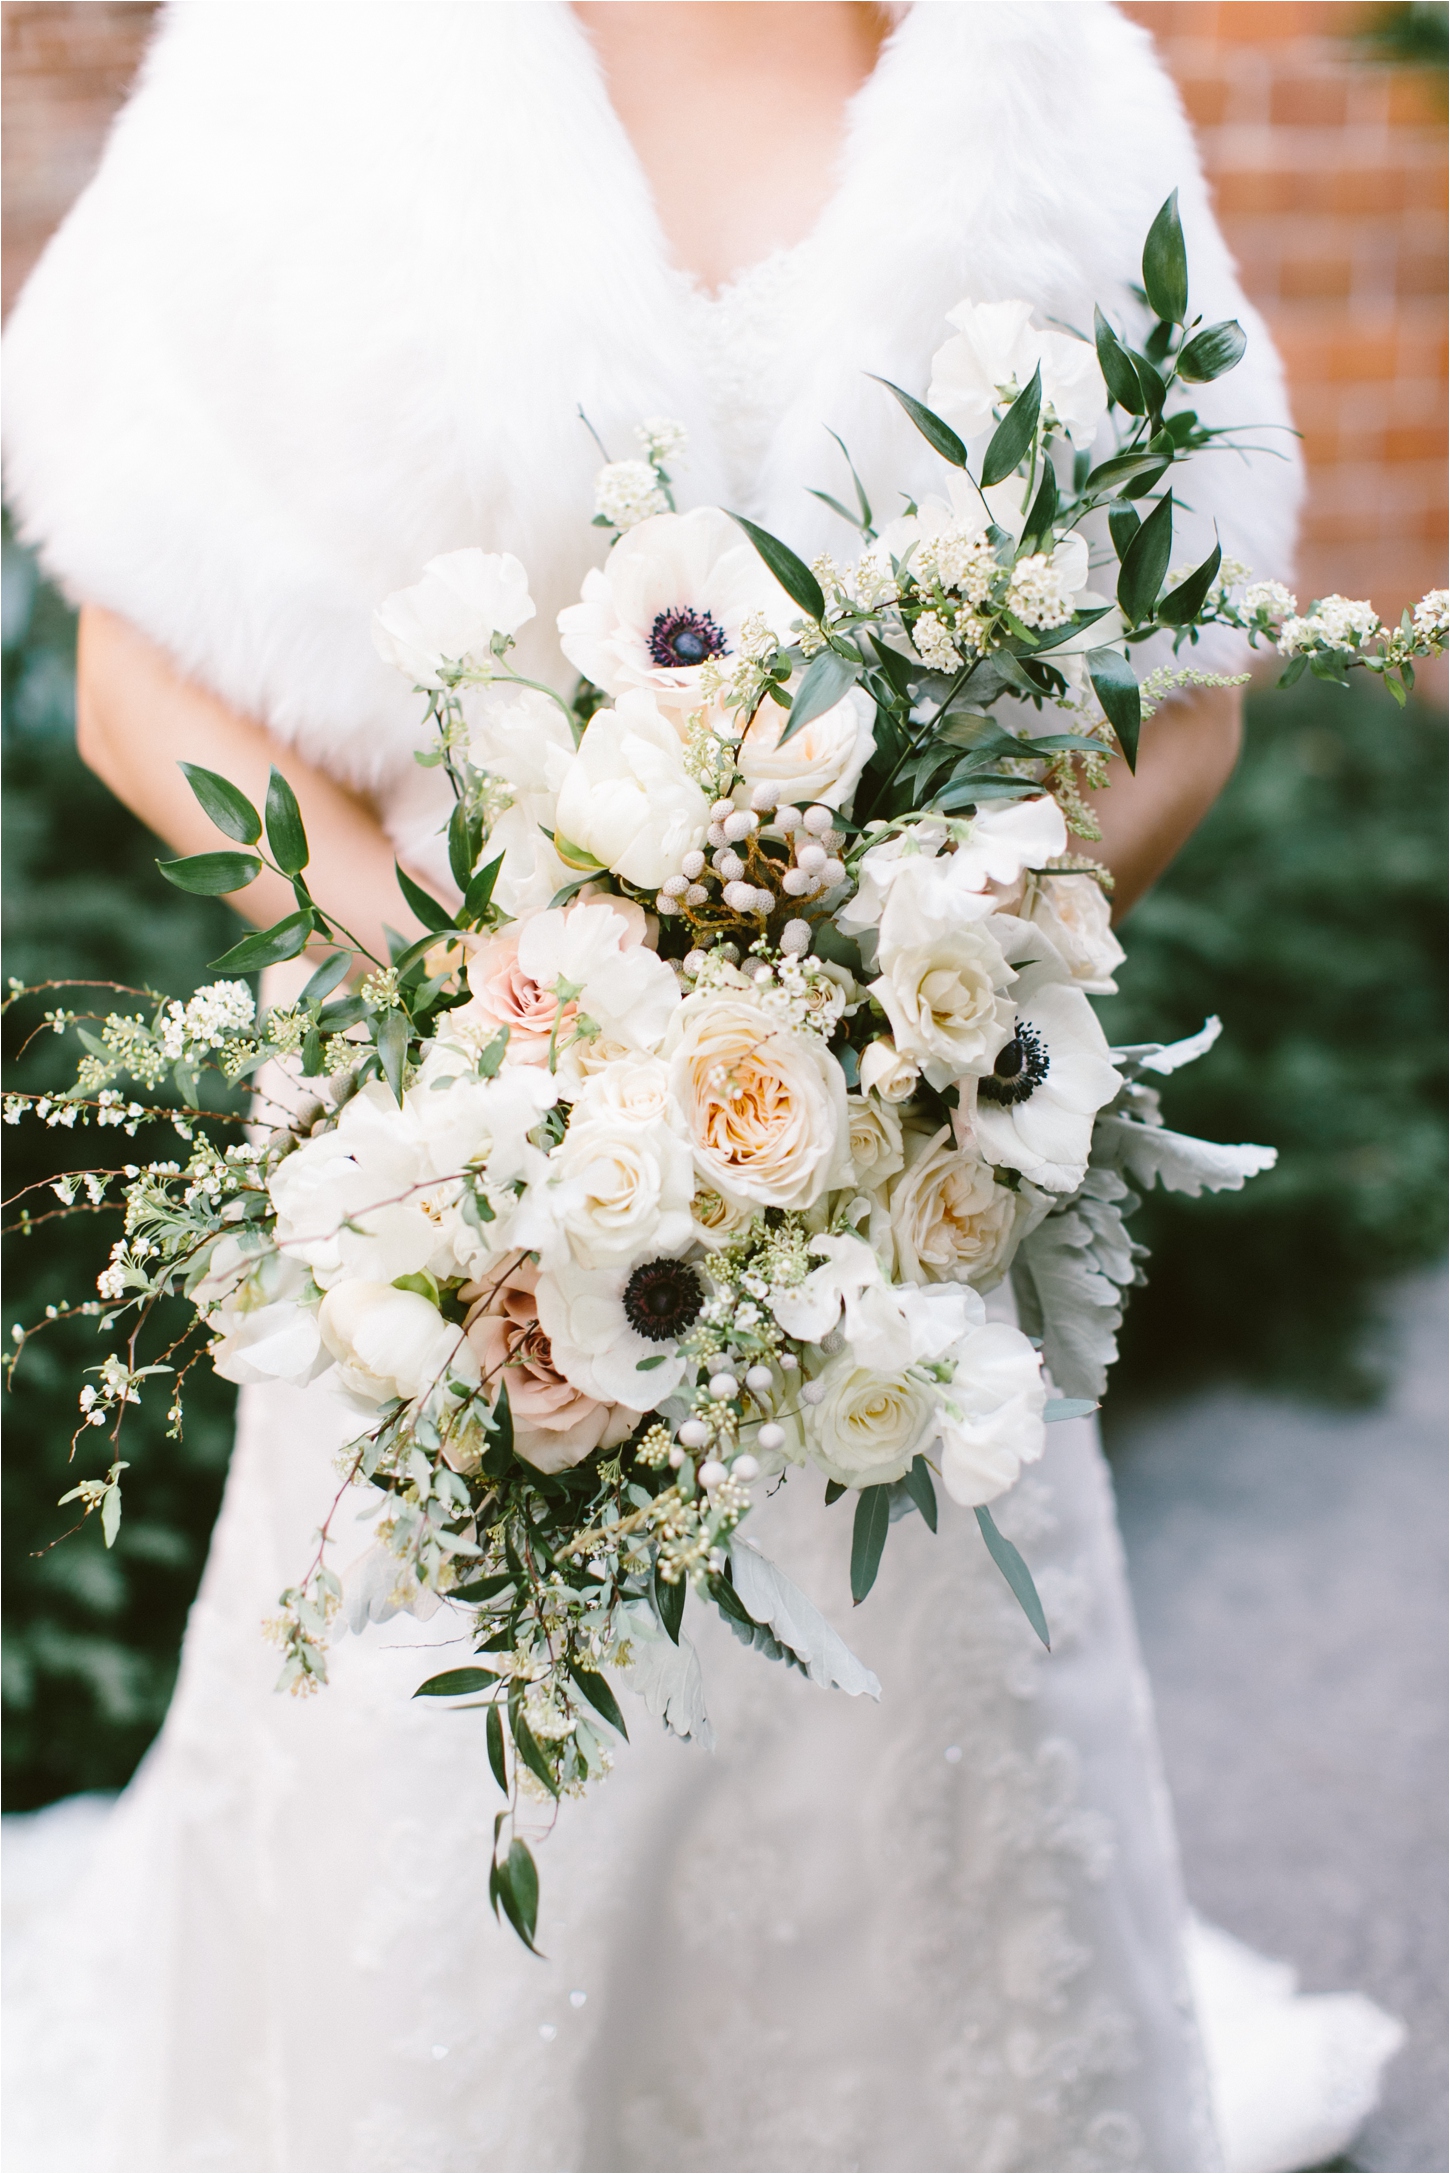 Sullivan Owen Wedding Bouquet by Brianna Wilbur Photography